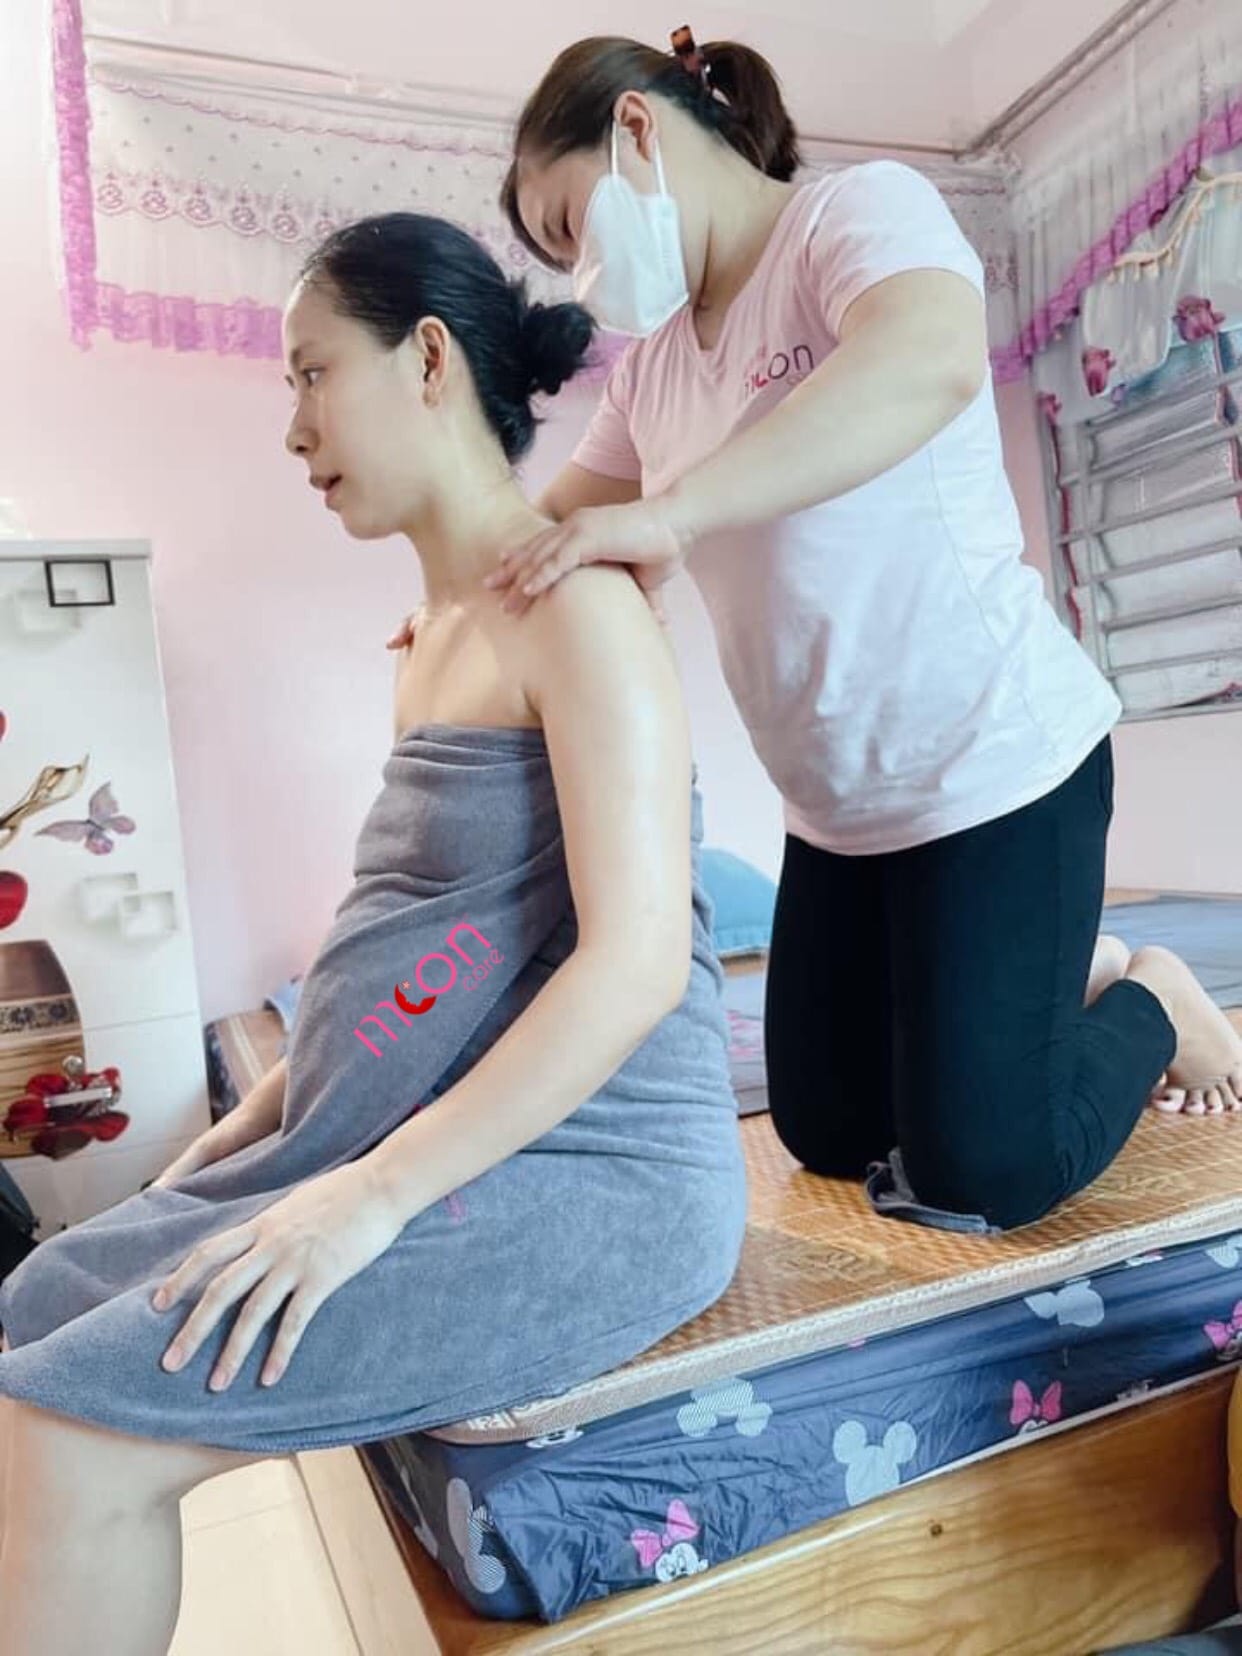 Top 7 Dịch vụ chăm sóc mẹ và bé uy tín, chất lượng nhất tại Hà Nội -  Chăm sóc mẹ và bé Moon Care